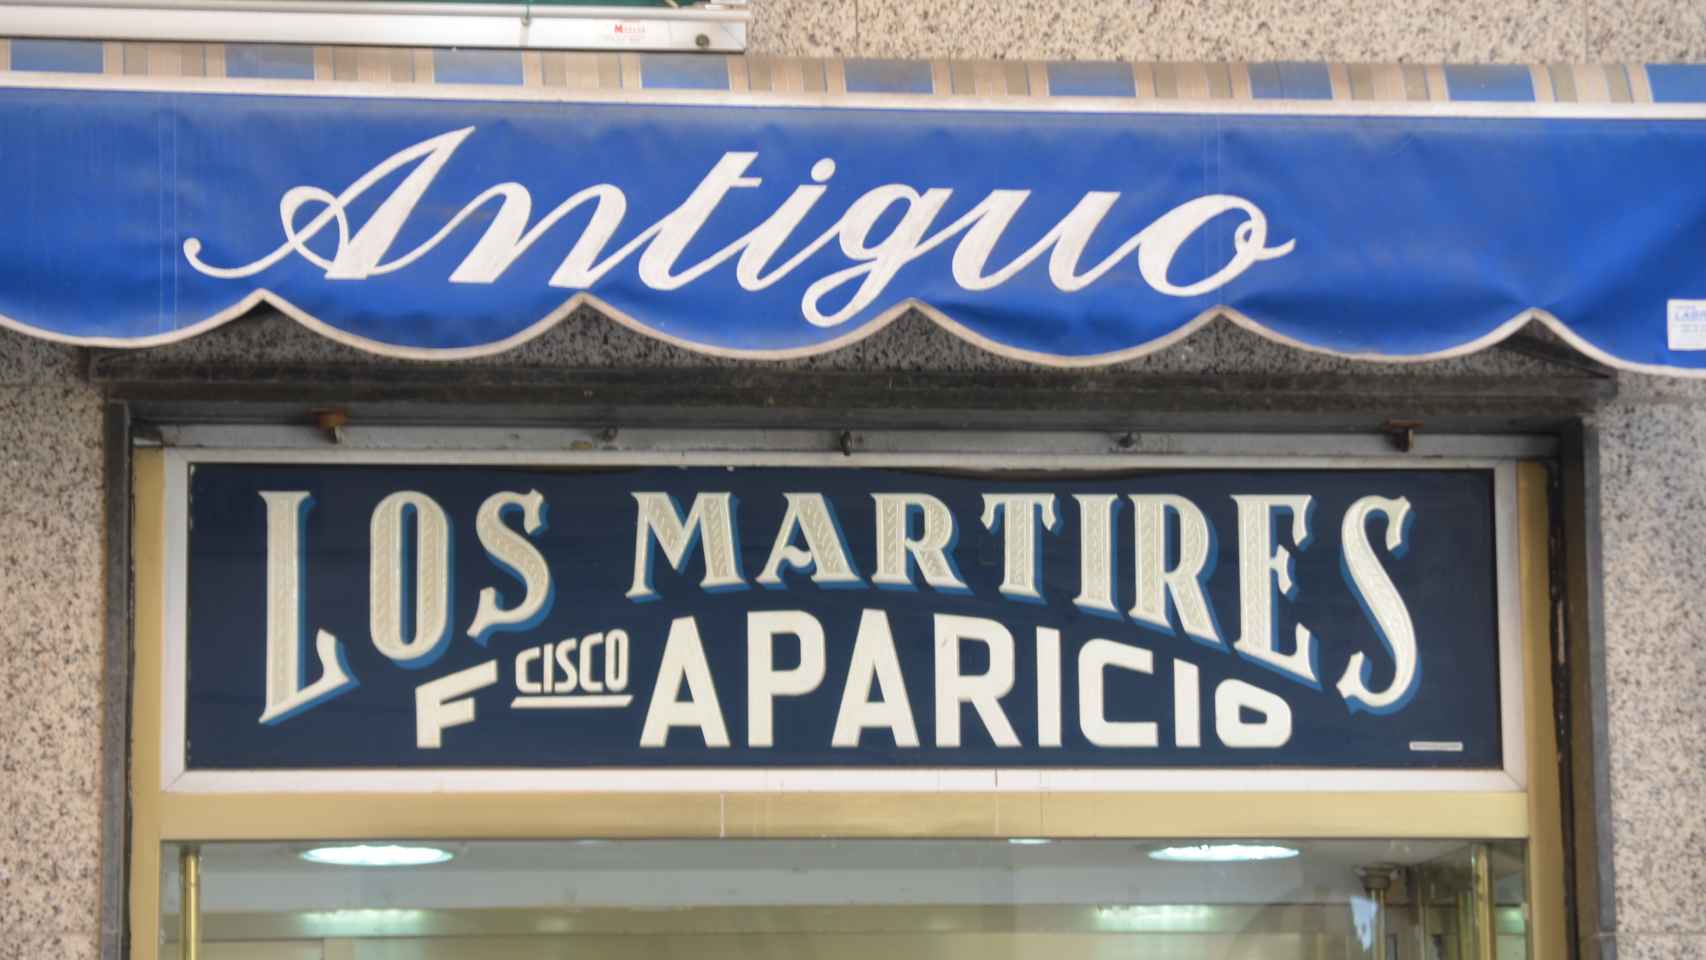 Los rótulos clásicos de negocios tradicionales de Málaga rescatados del olvido